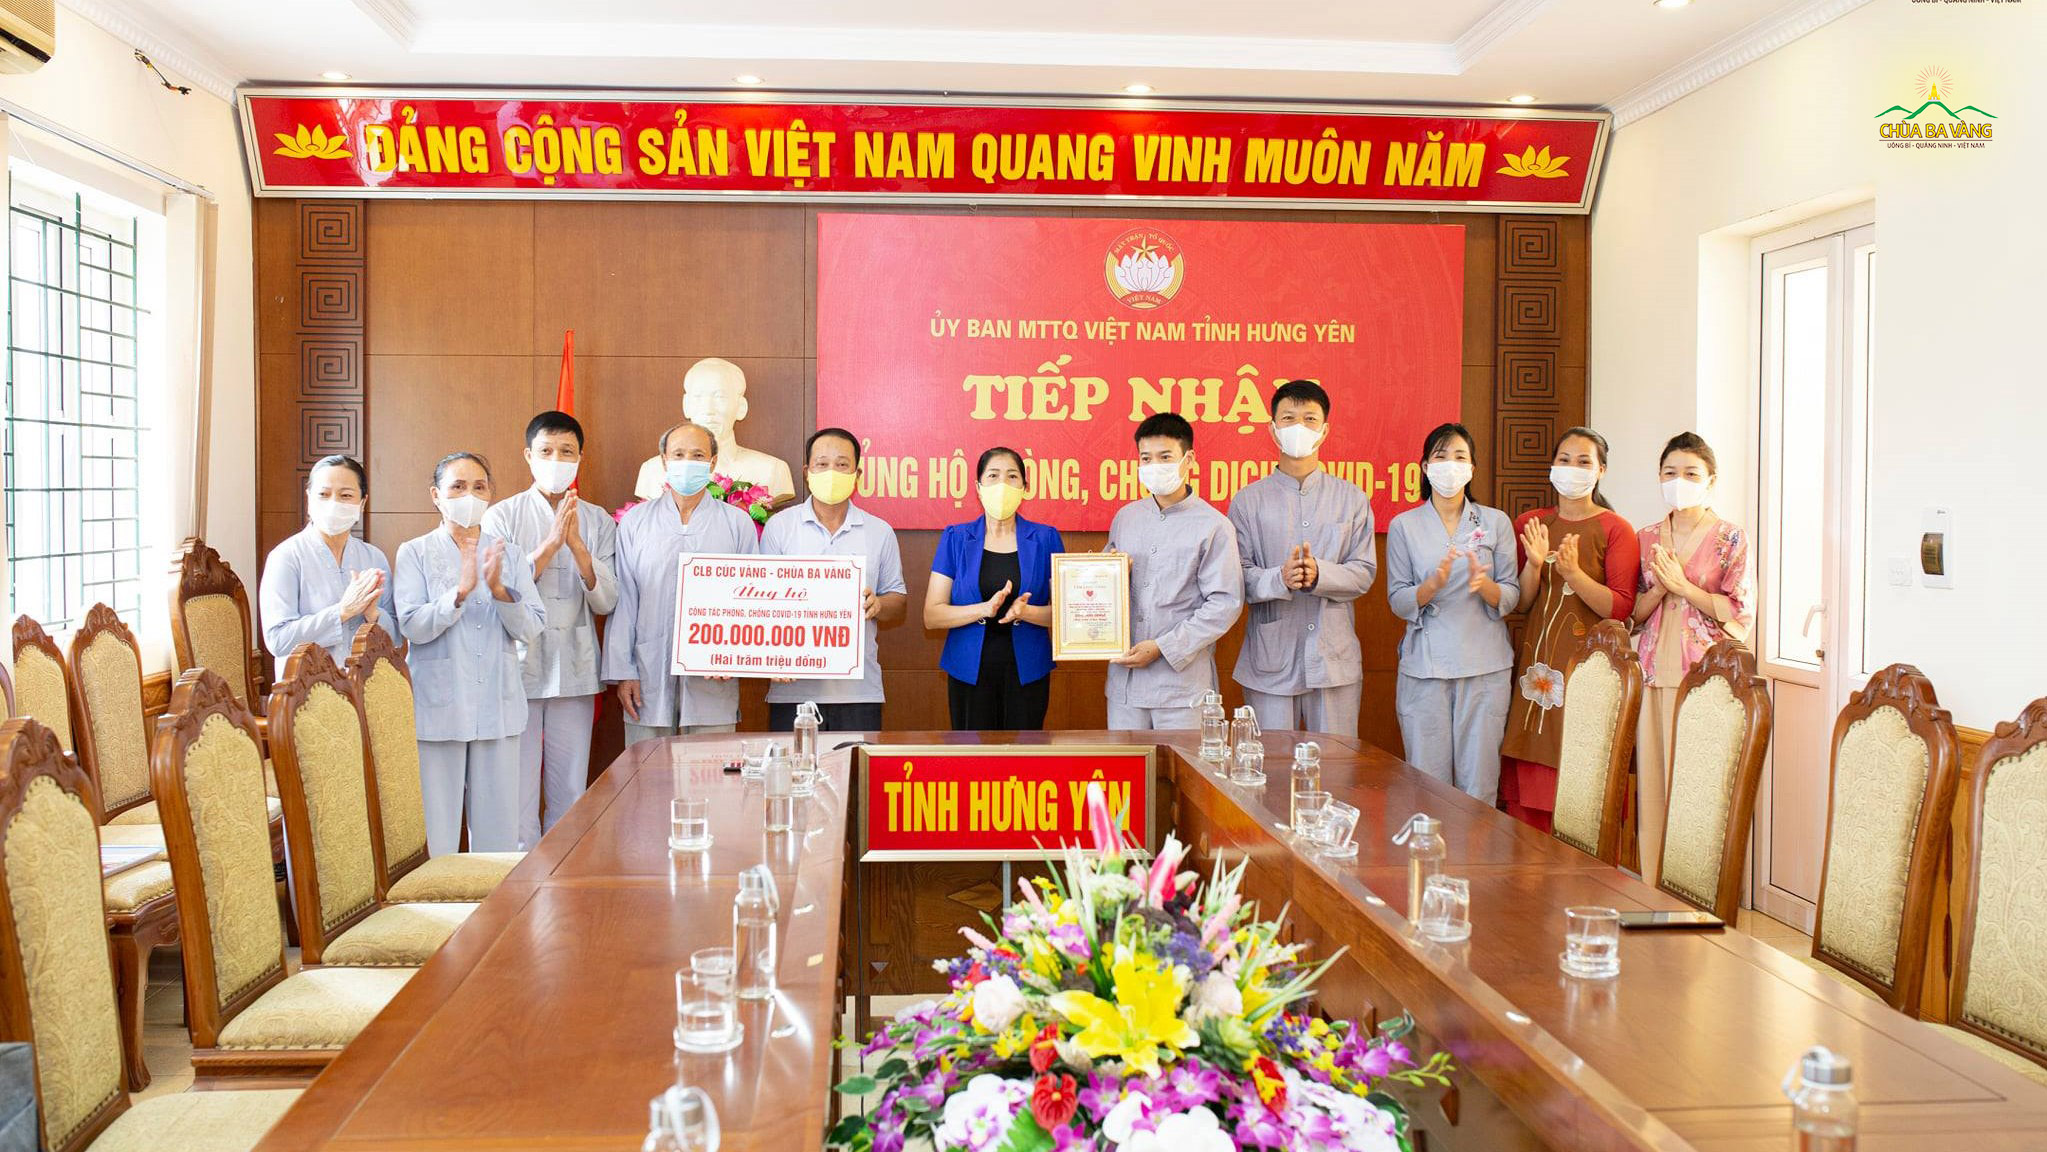 Đại diện các Phật tử trong Câu lạc bộ Cúc Vàng chùa Ba Vàng đã ủng hộ 200 triệu đồng tới Ủy ban MTTQVN tỉnh Hưng Yên để phục vụ cho công tác phòng, chống dịch bệnh Covid-19